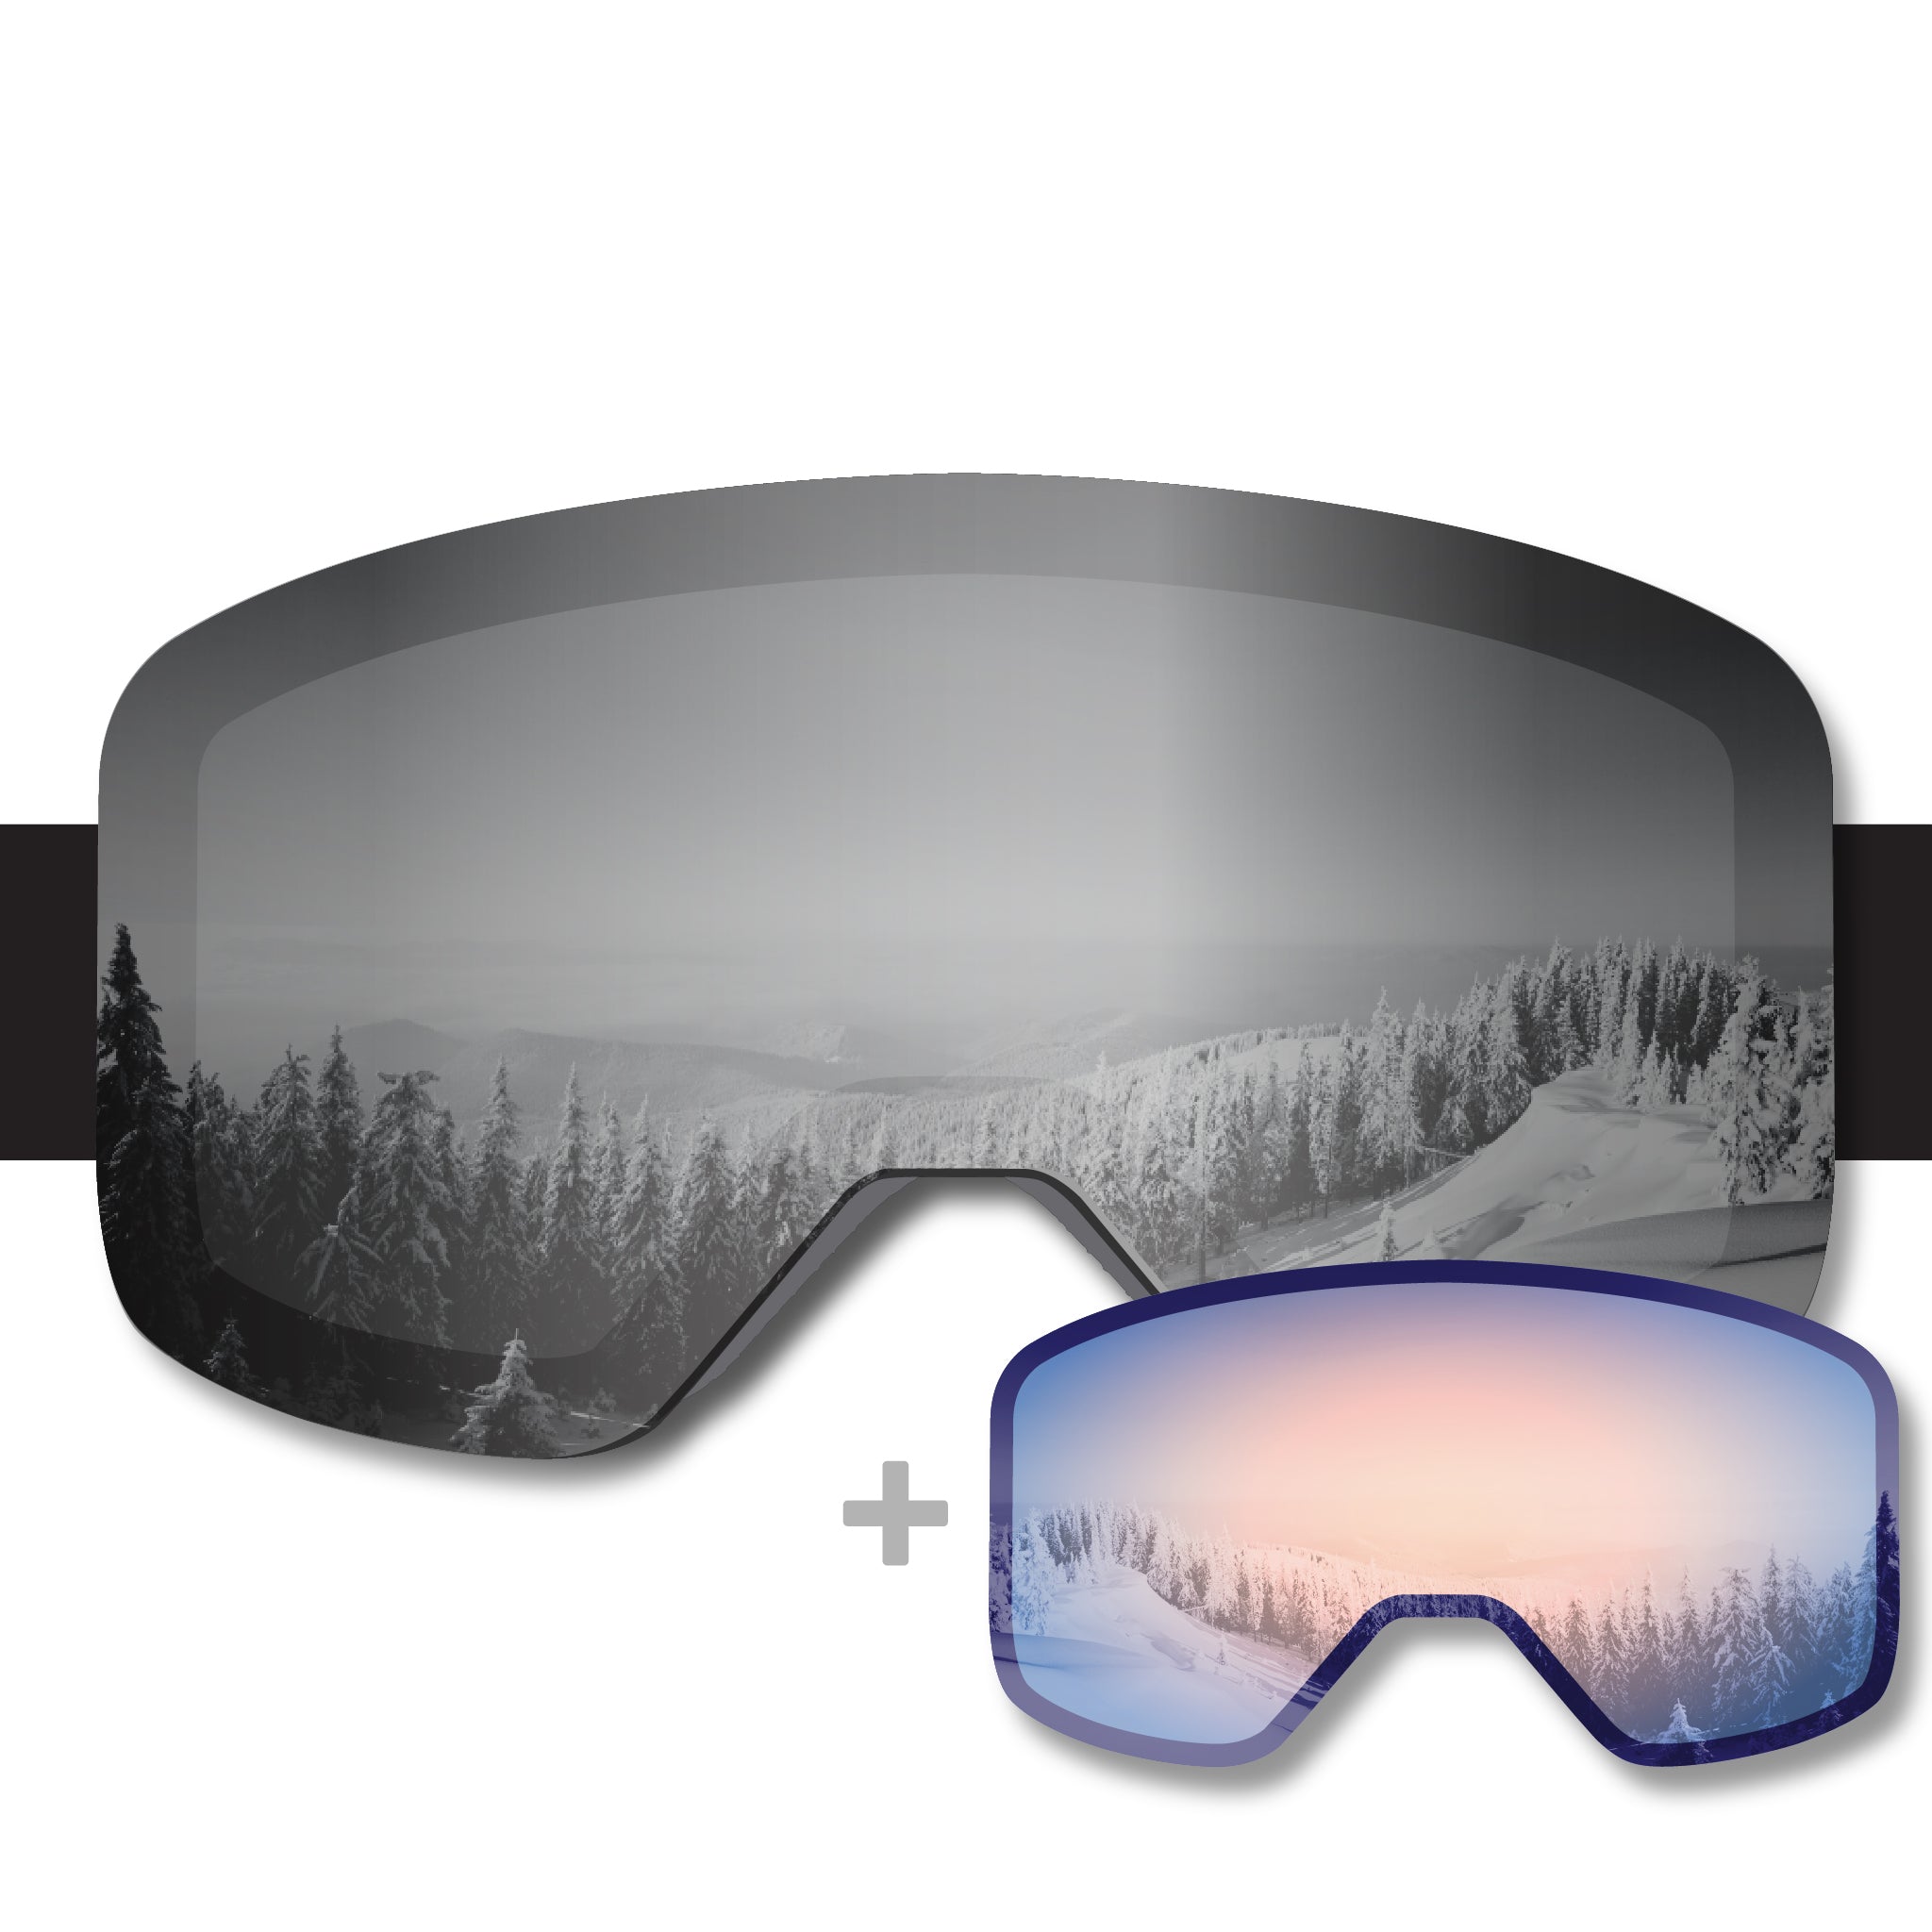 ALTA Propnetic Ski Goggle - Retro Alta Flake Strap